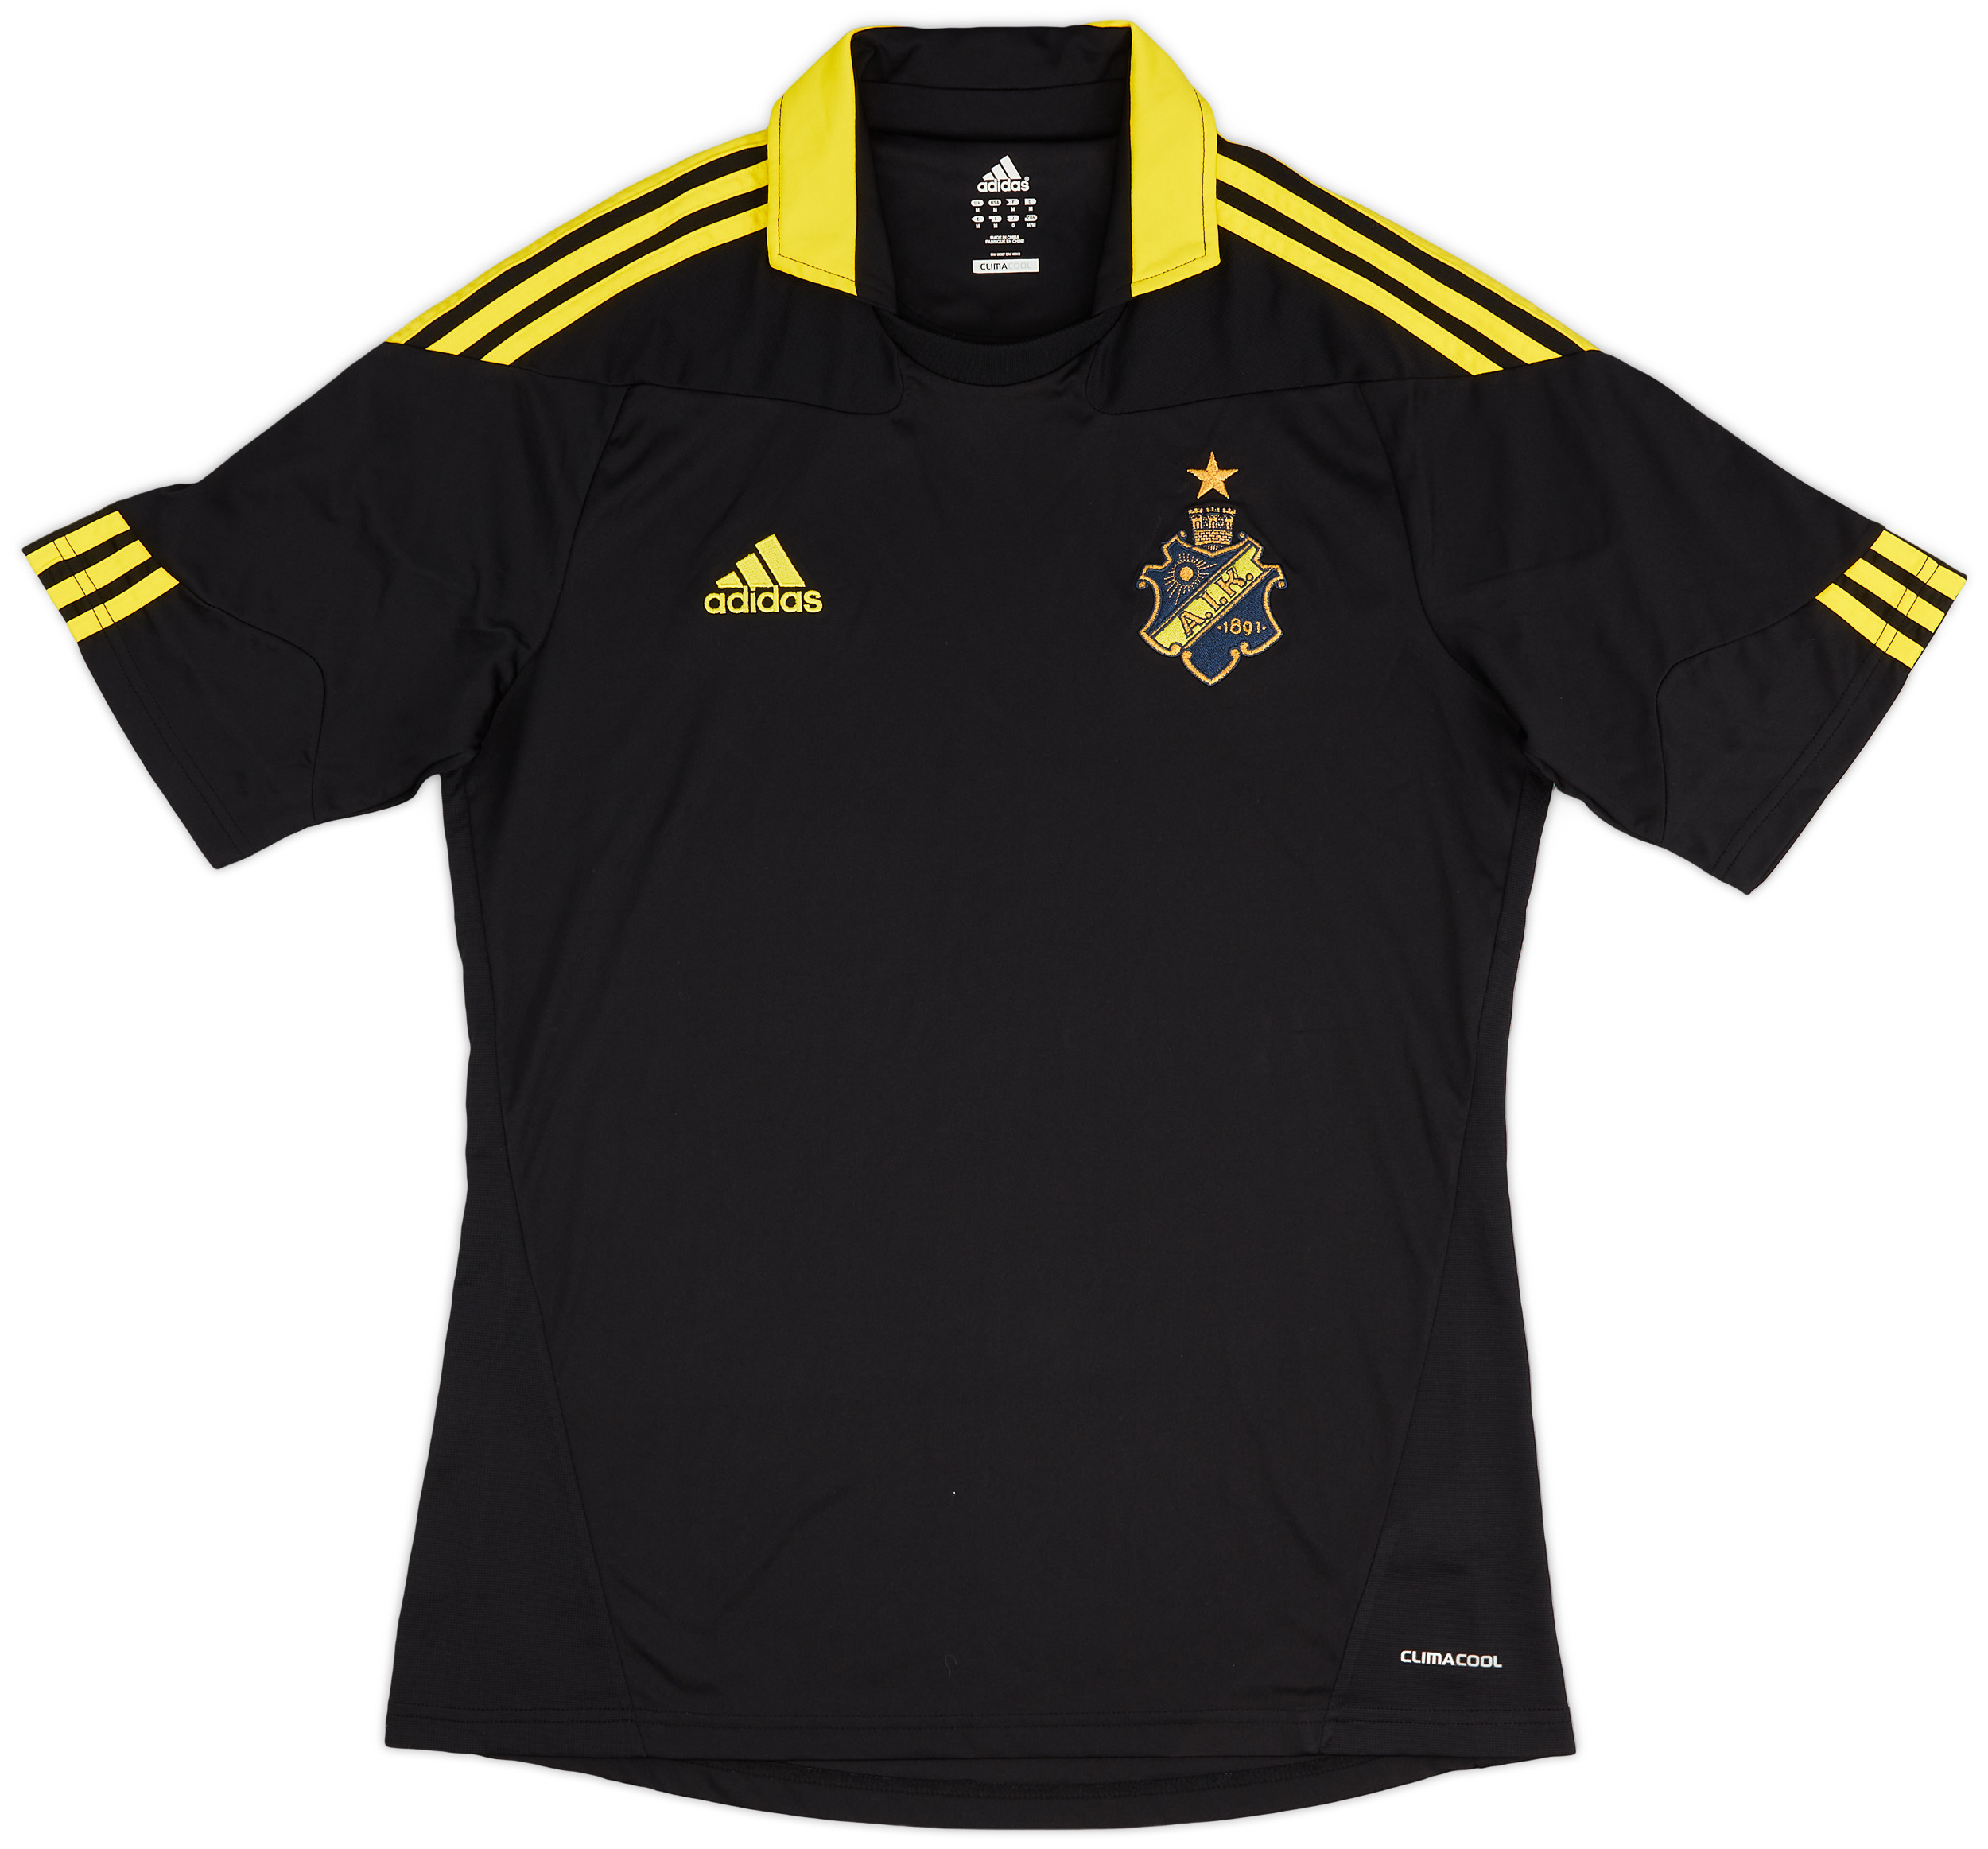 AIK Fotboll   home camisa (Original)